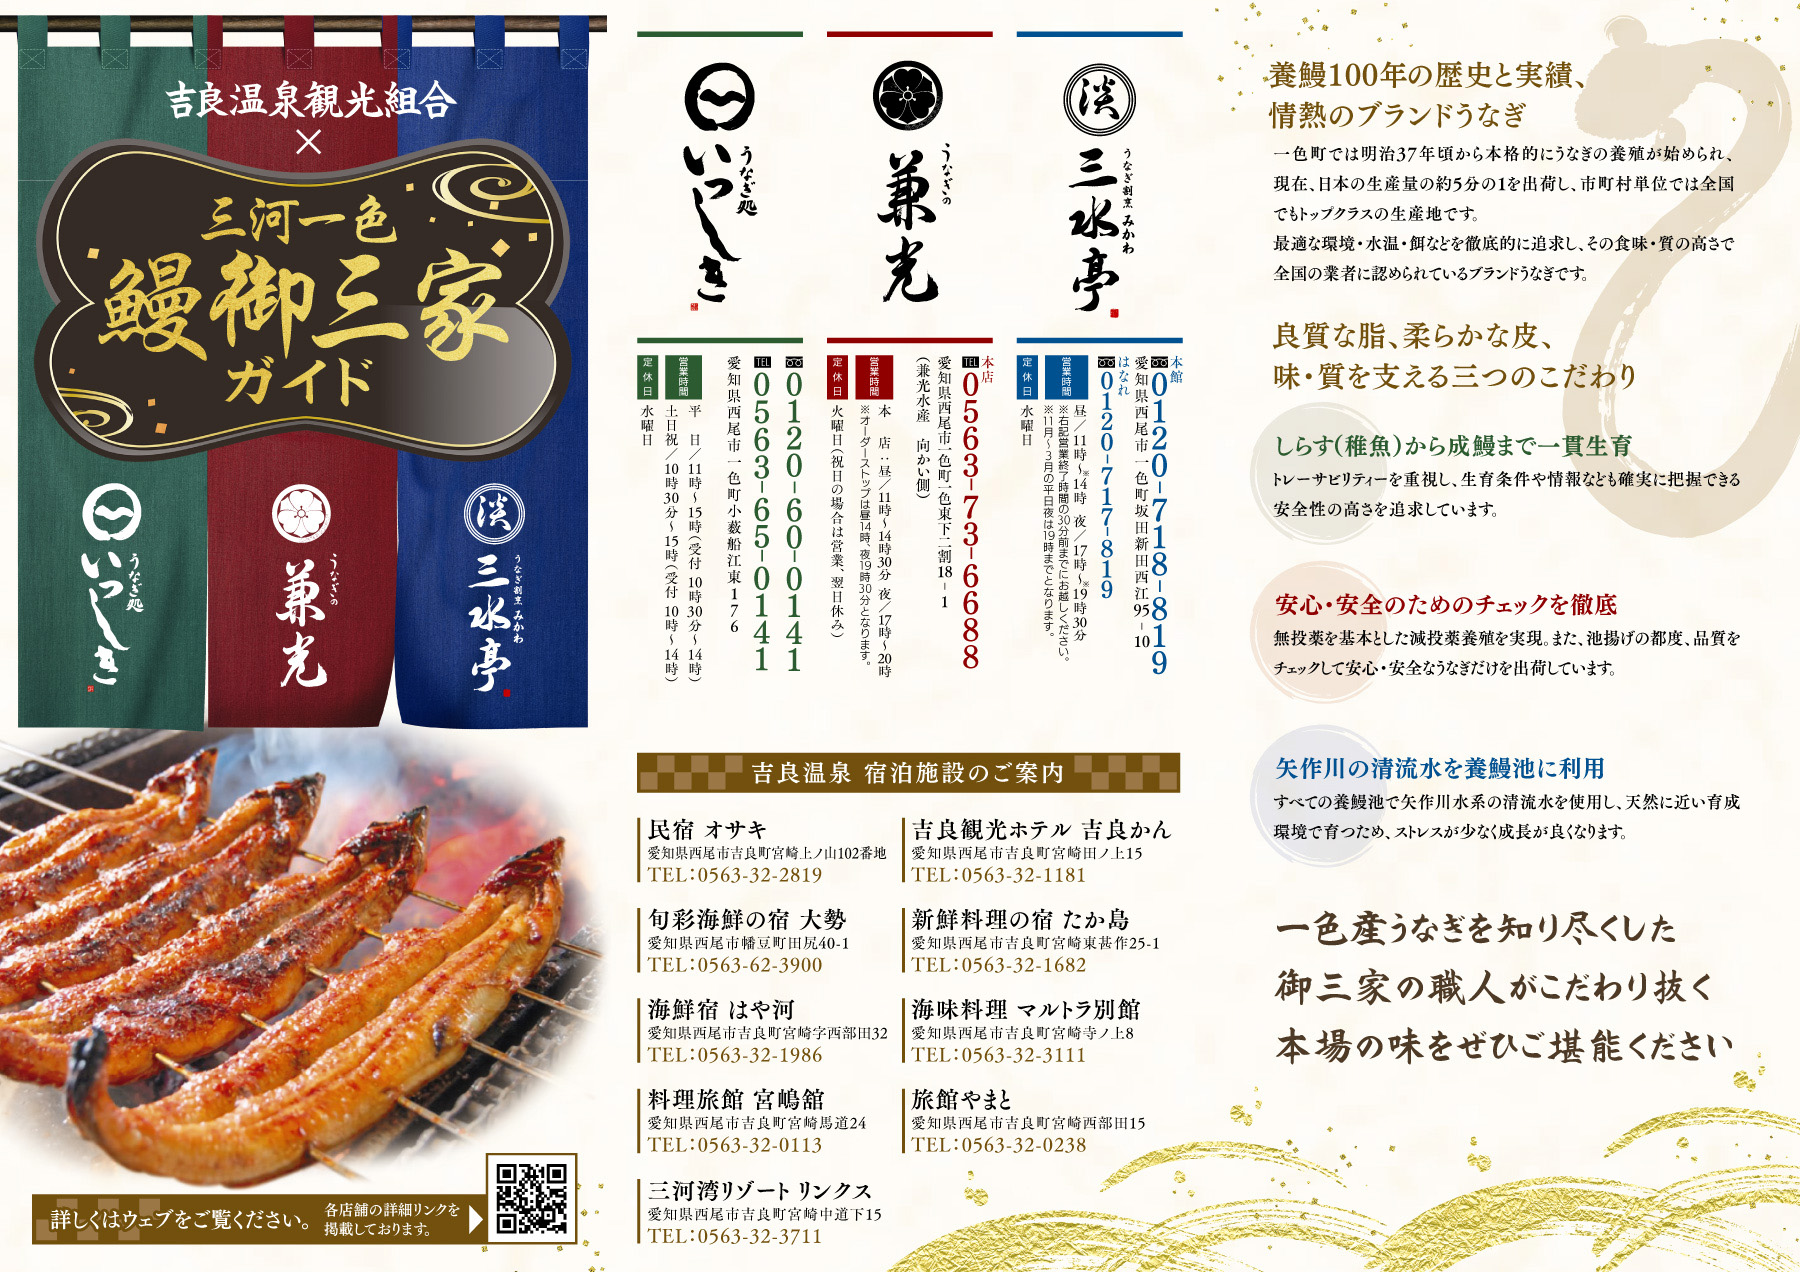 吉良温泉観光組合加盟店に宿泊して「鰻を当てようキャンペーン！」